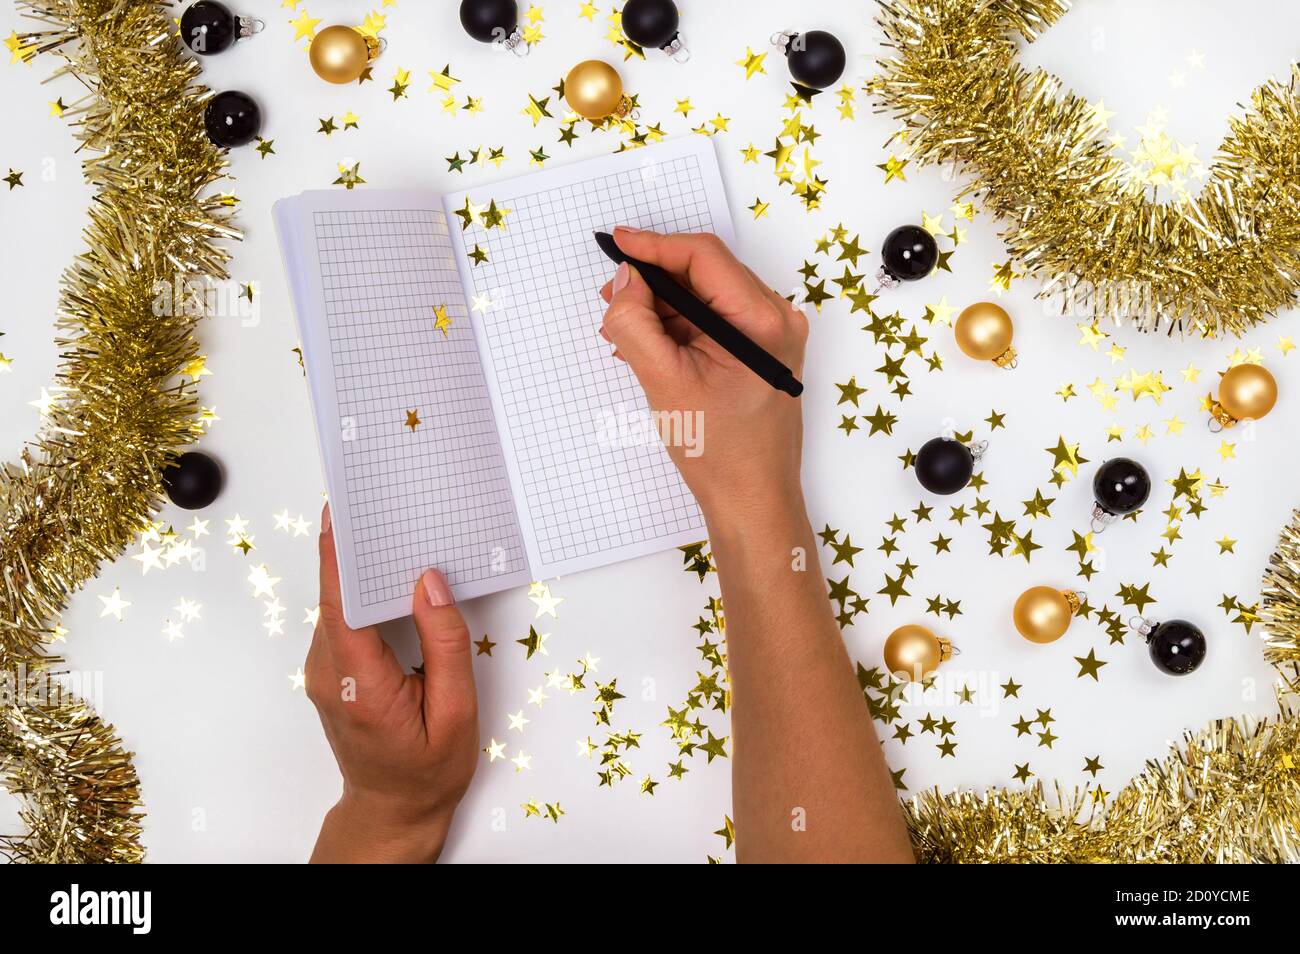 Mains de femmes avec stylo et carnet parmi des boules de Noël dorées et noires, guirlande et confettis étoiles. Liste de souhaits, résolutions du nouvel an ou plan 2021 Banque D'Images